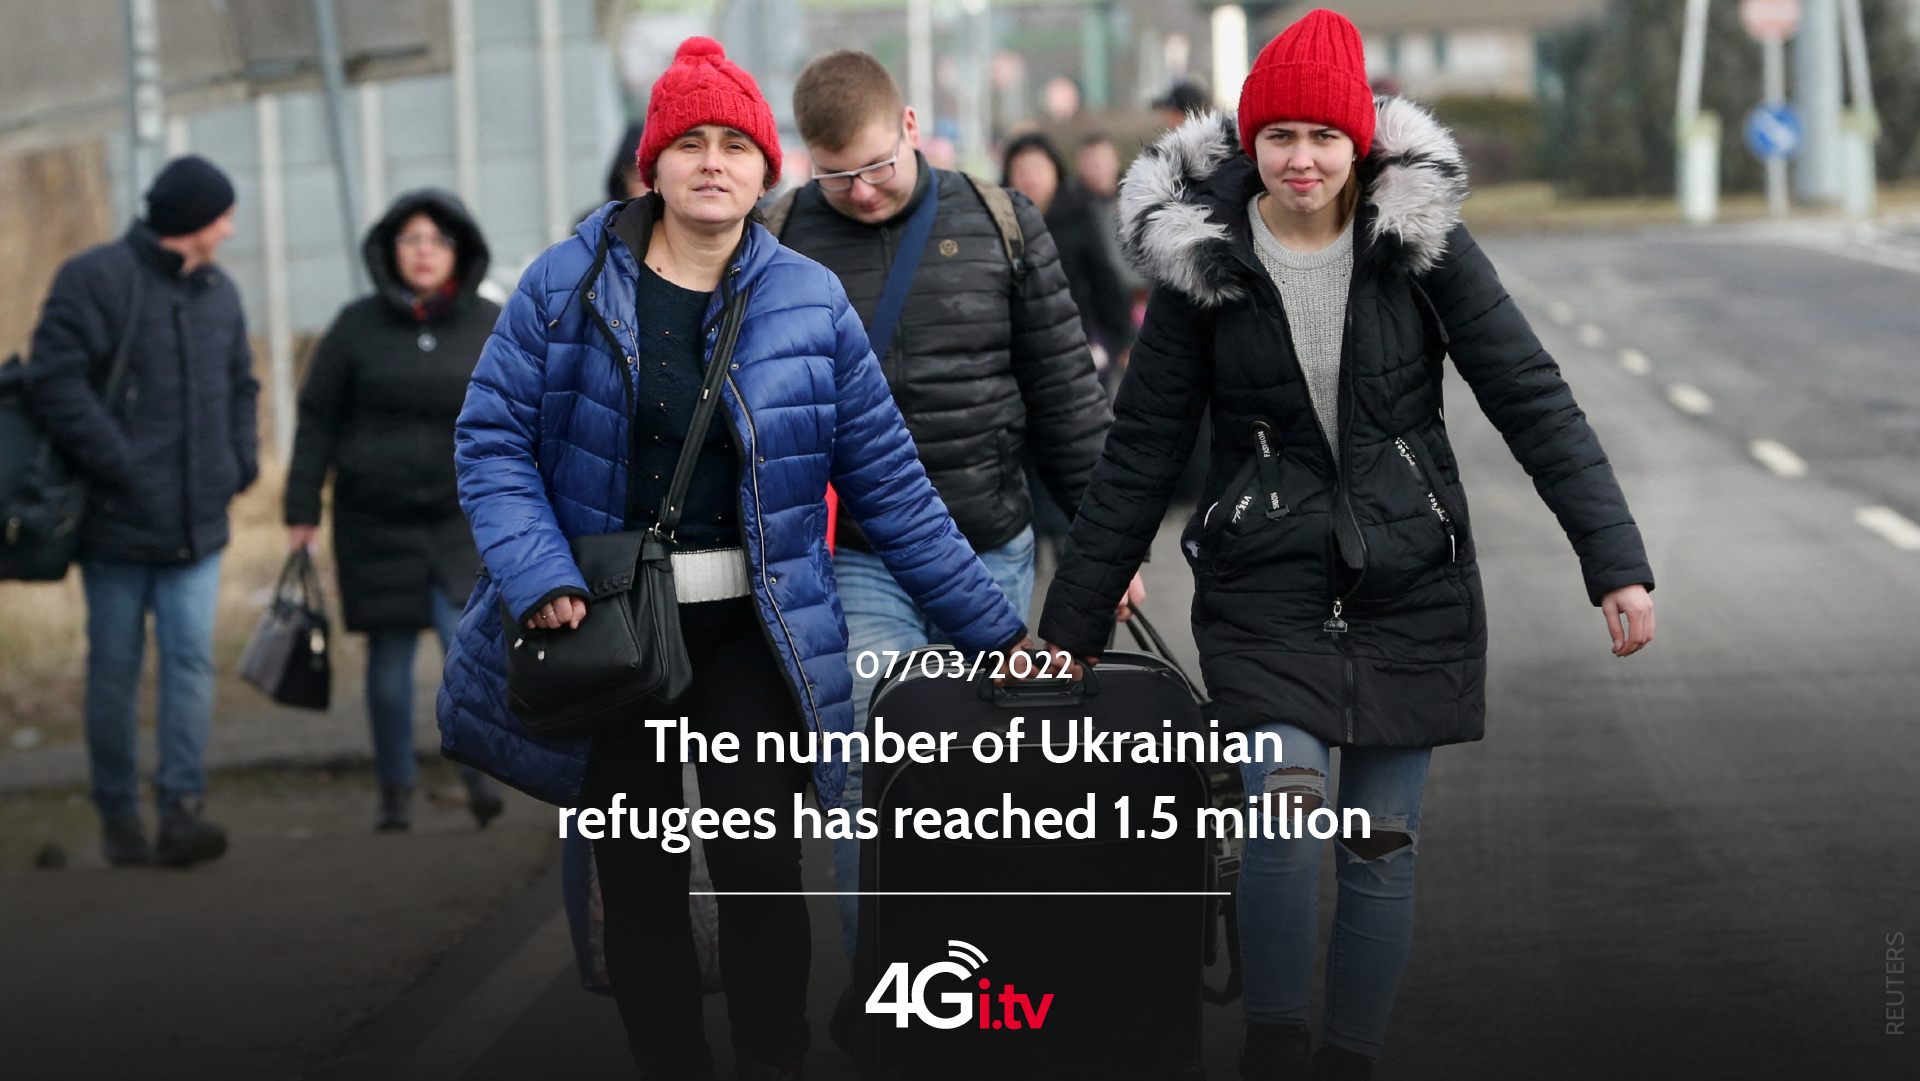 Подробнее о статье The number of Ukrainian refugees has reached 1.5 million